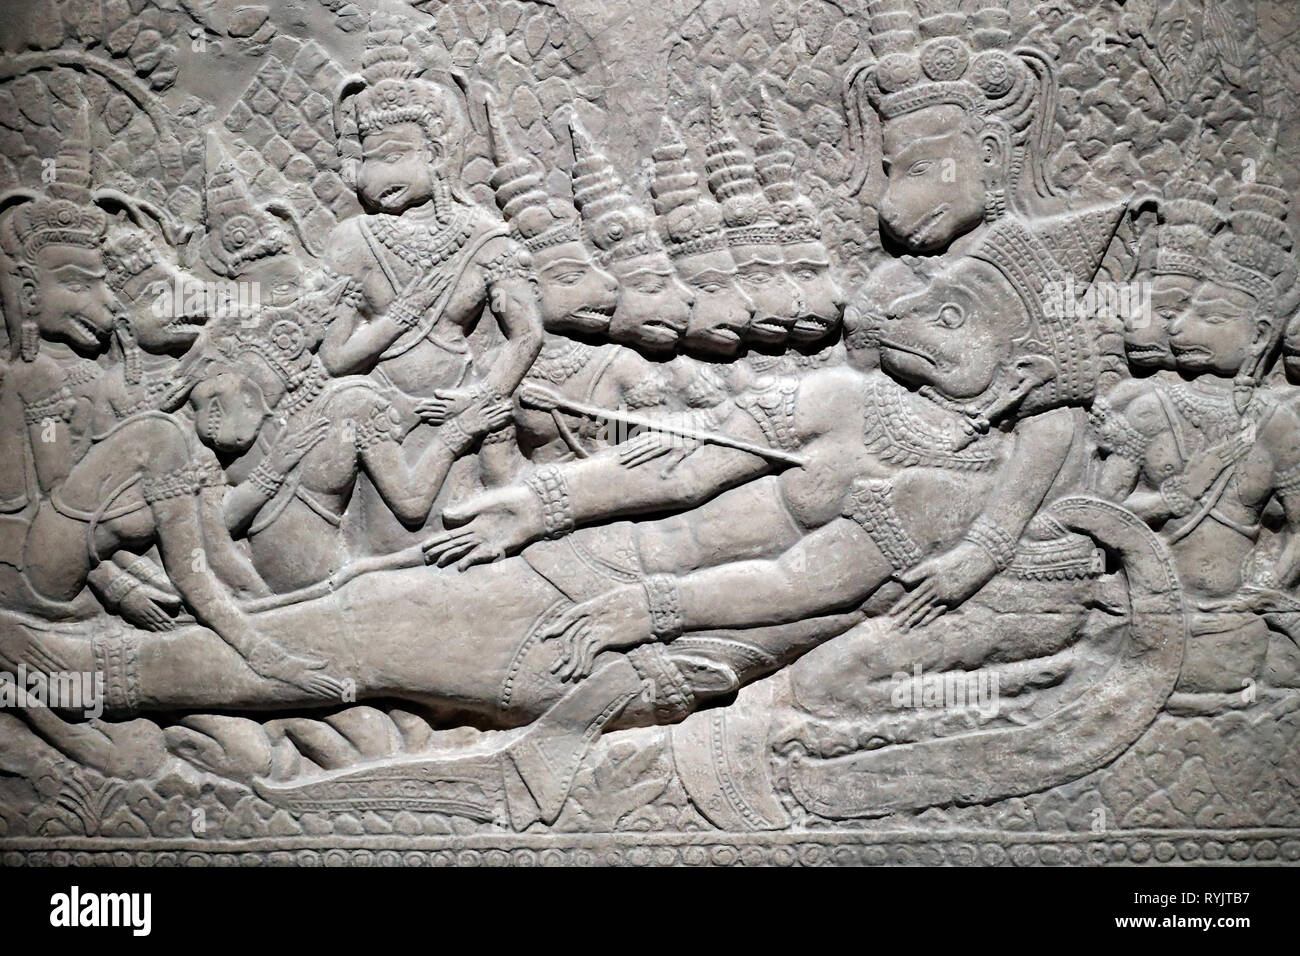 Musée des Civilisations Asiatiques. Angkor. Explorer la ville sacrée du Cambodge. Plâtre : mort de Valin, bas-relief Angkor Vat. Siem Reap, 1873. Peint Banque D'Images